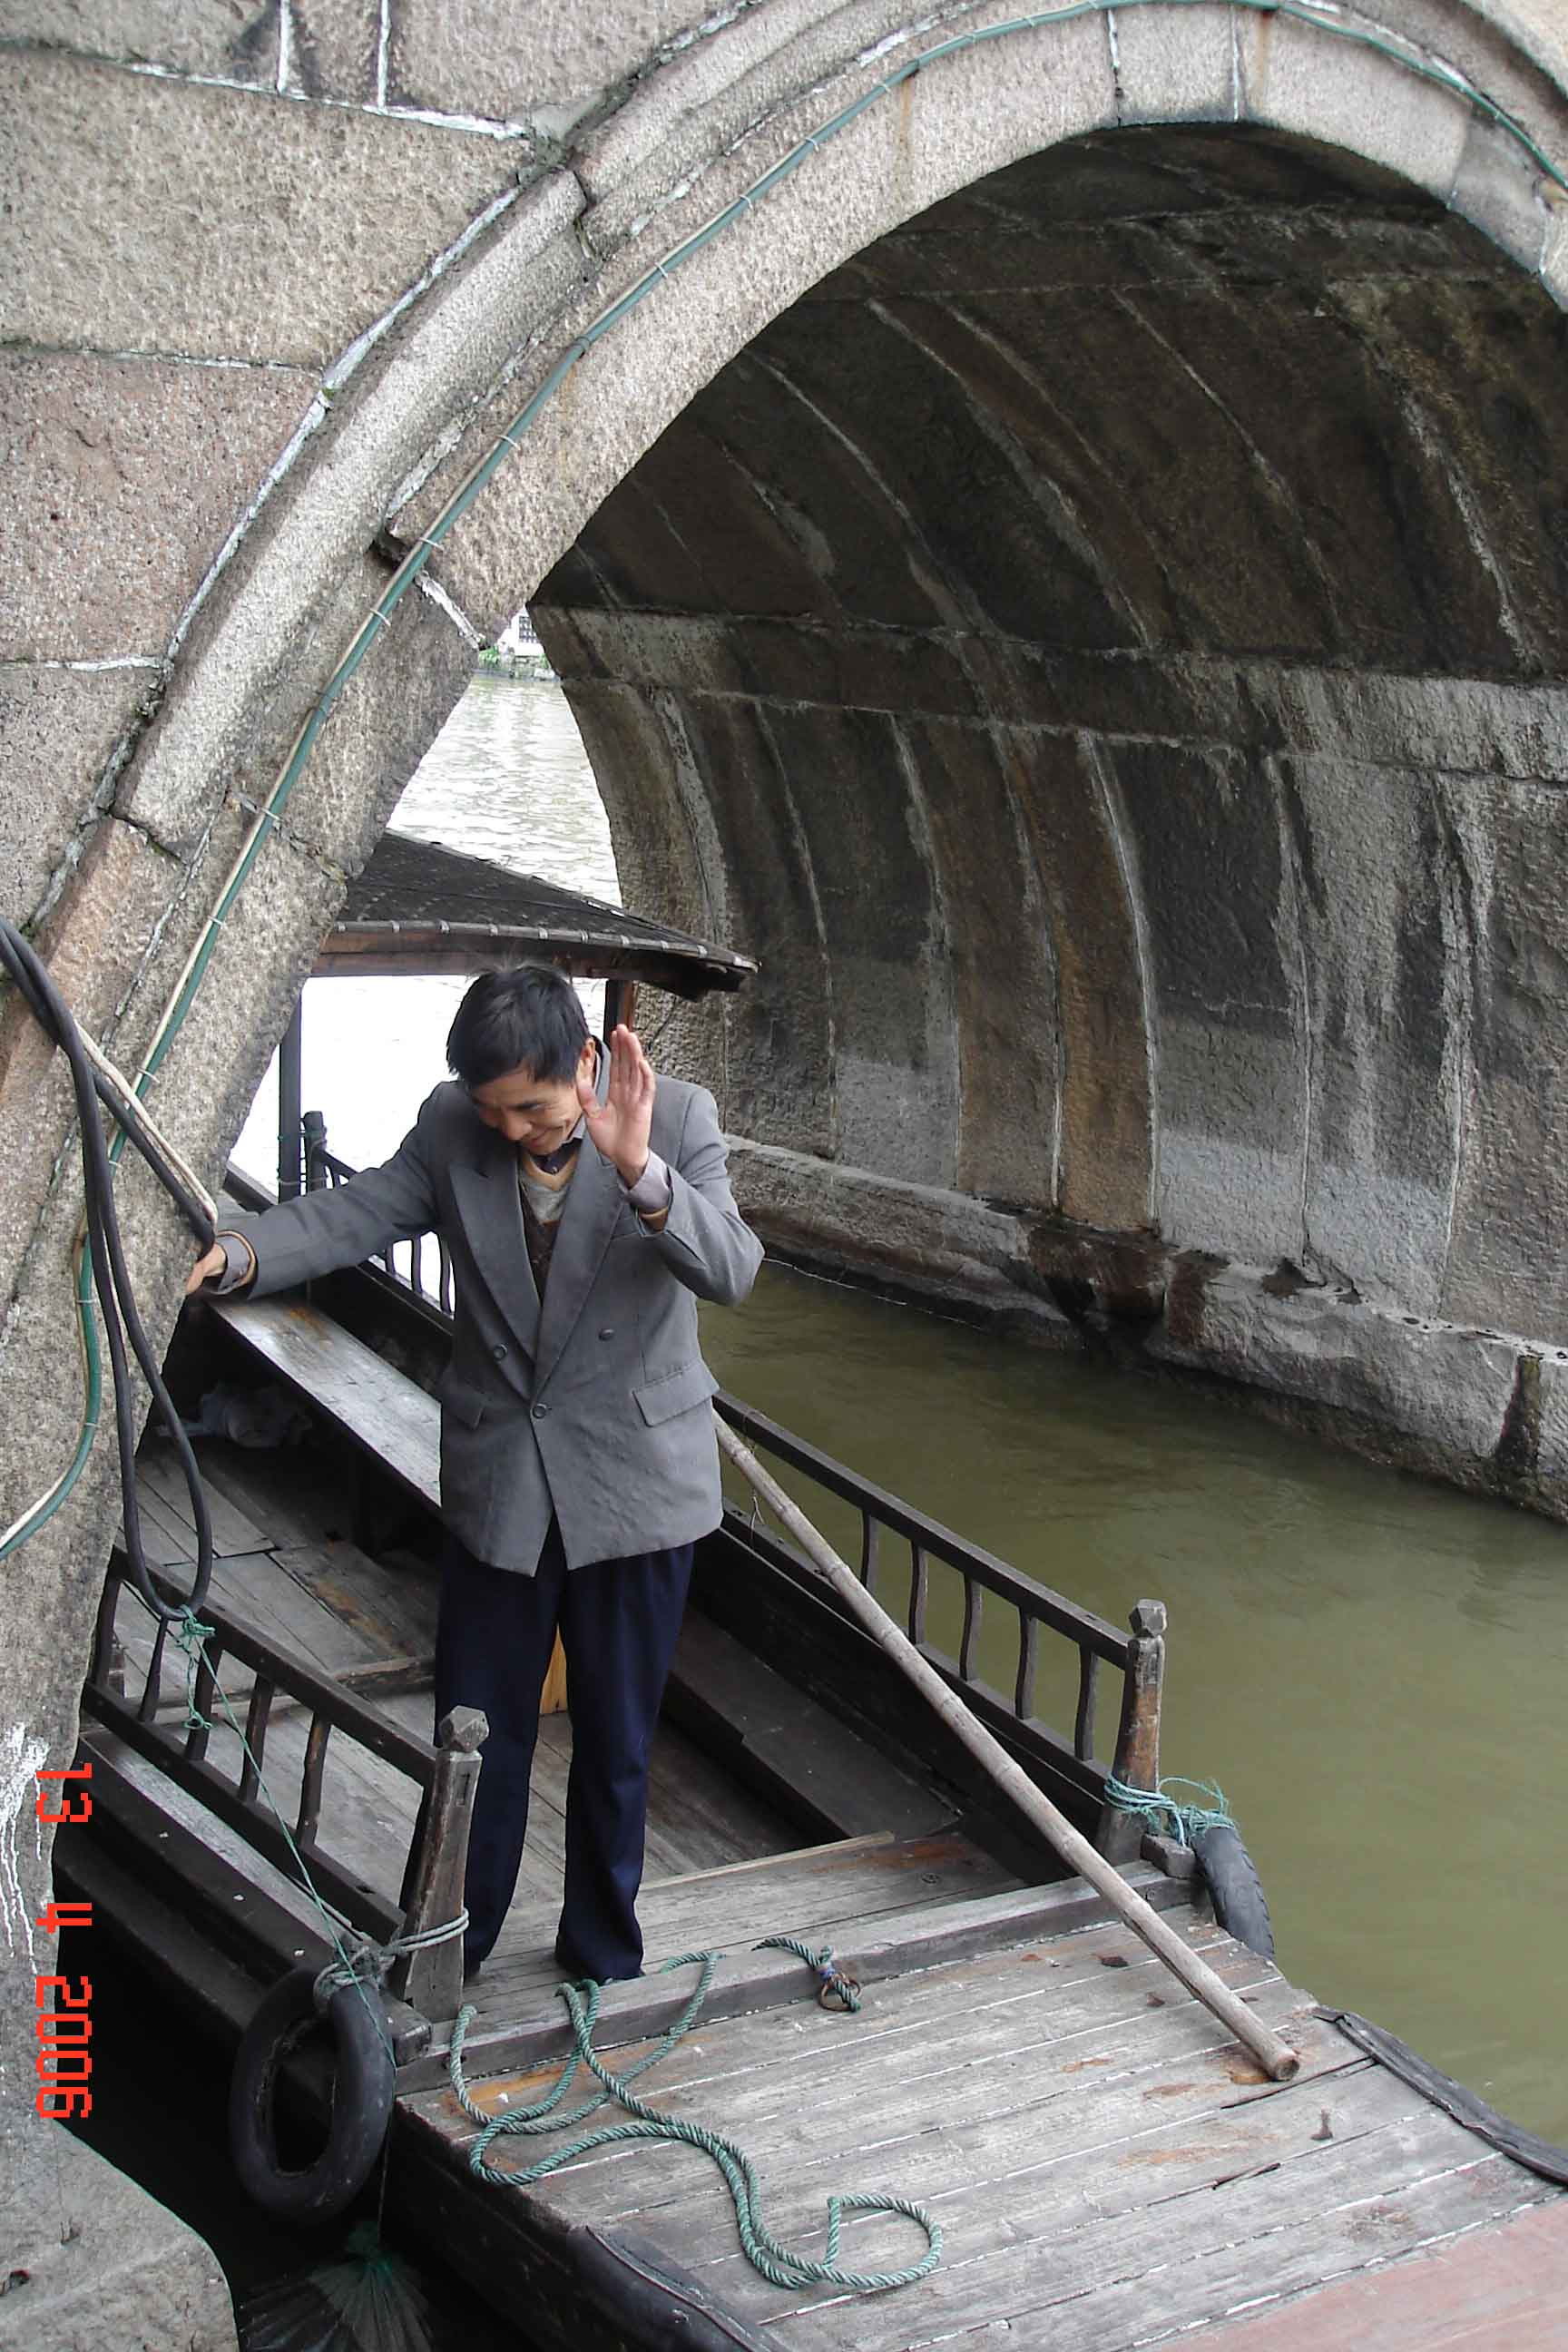 Saying Goodbye to our Boatman-Zhujiajiao Ancient Water Town